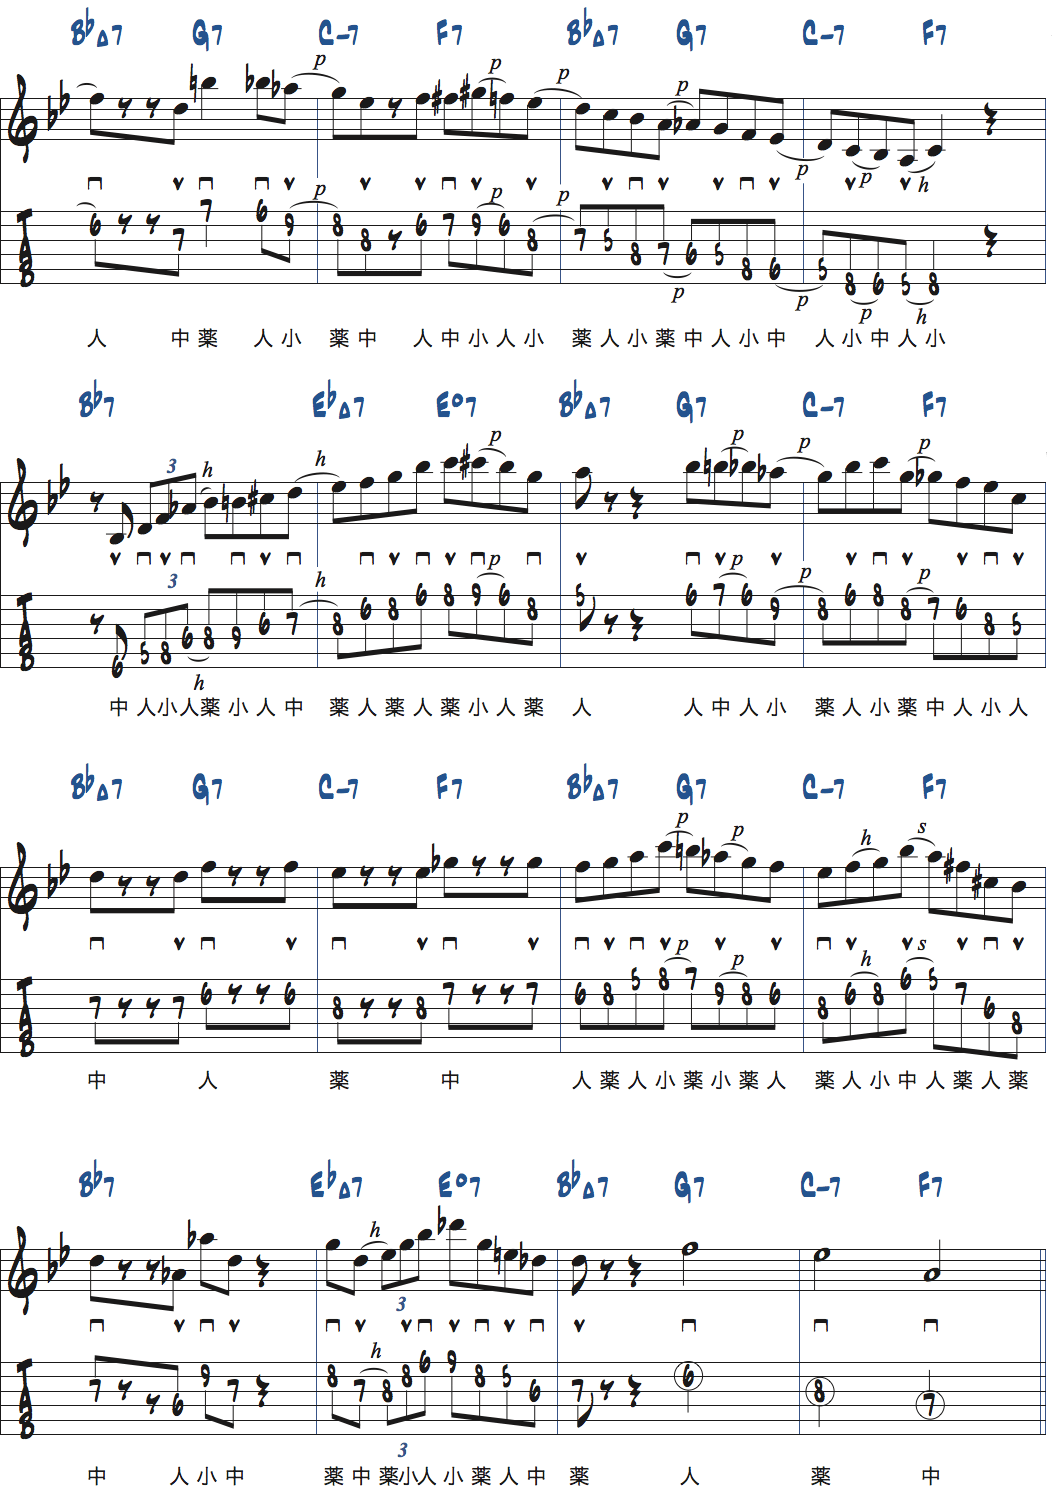 リズムチェンジ[A]セクションBPM120でのアドリブ例楽譜ページ2